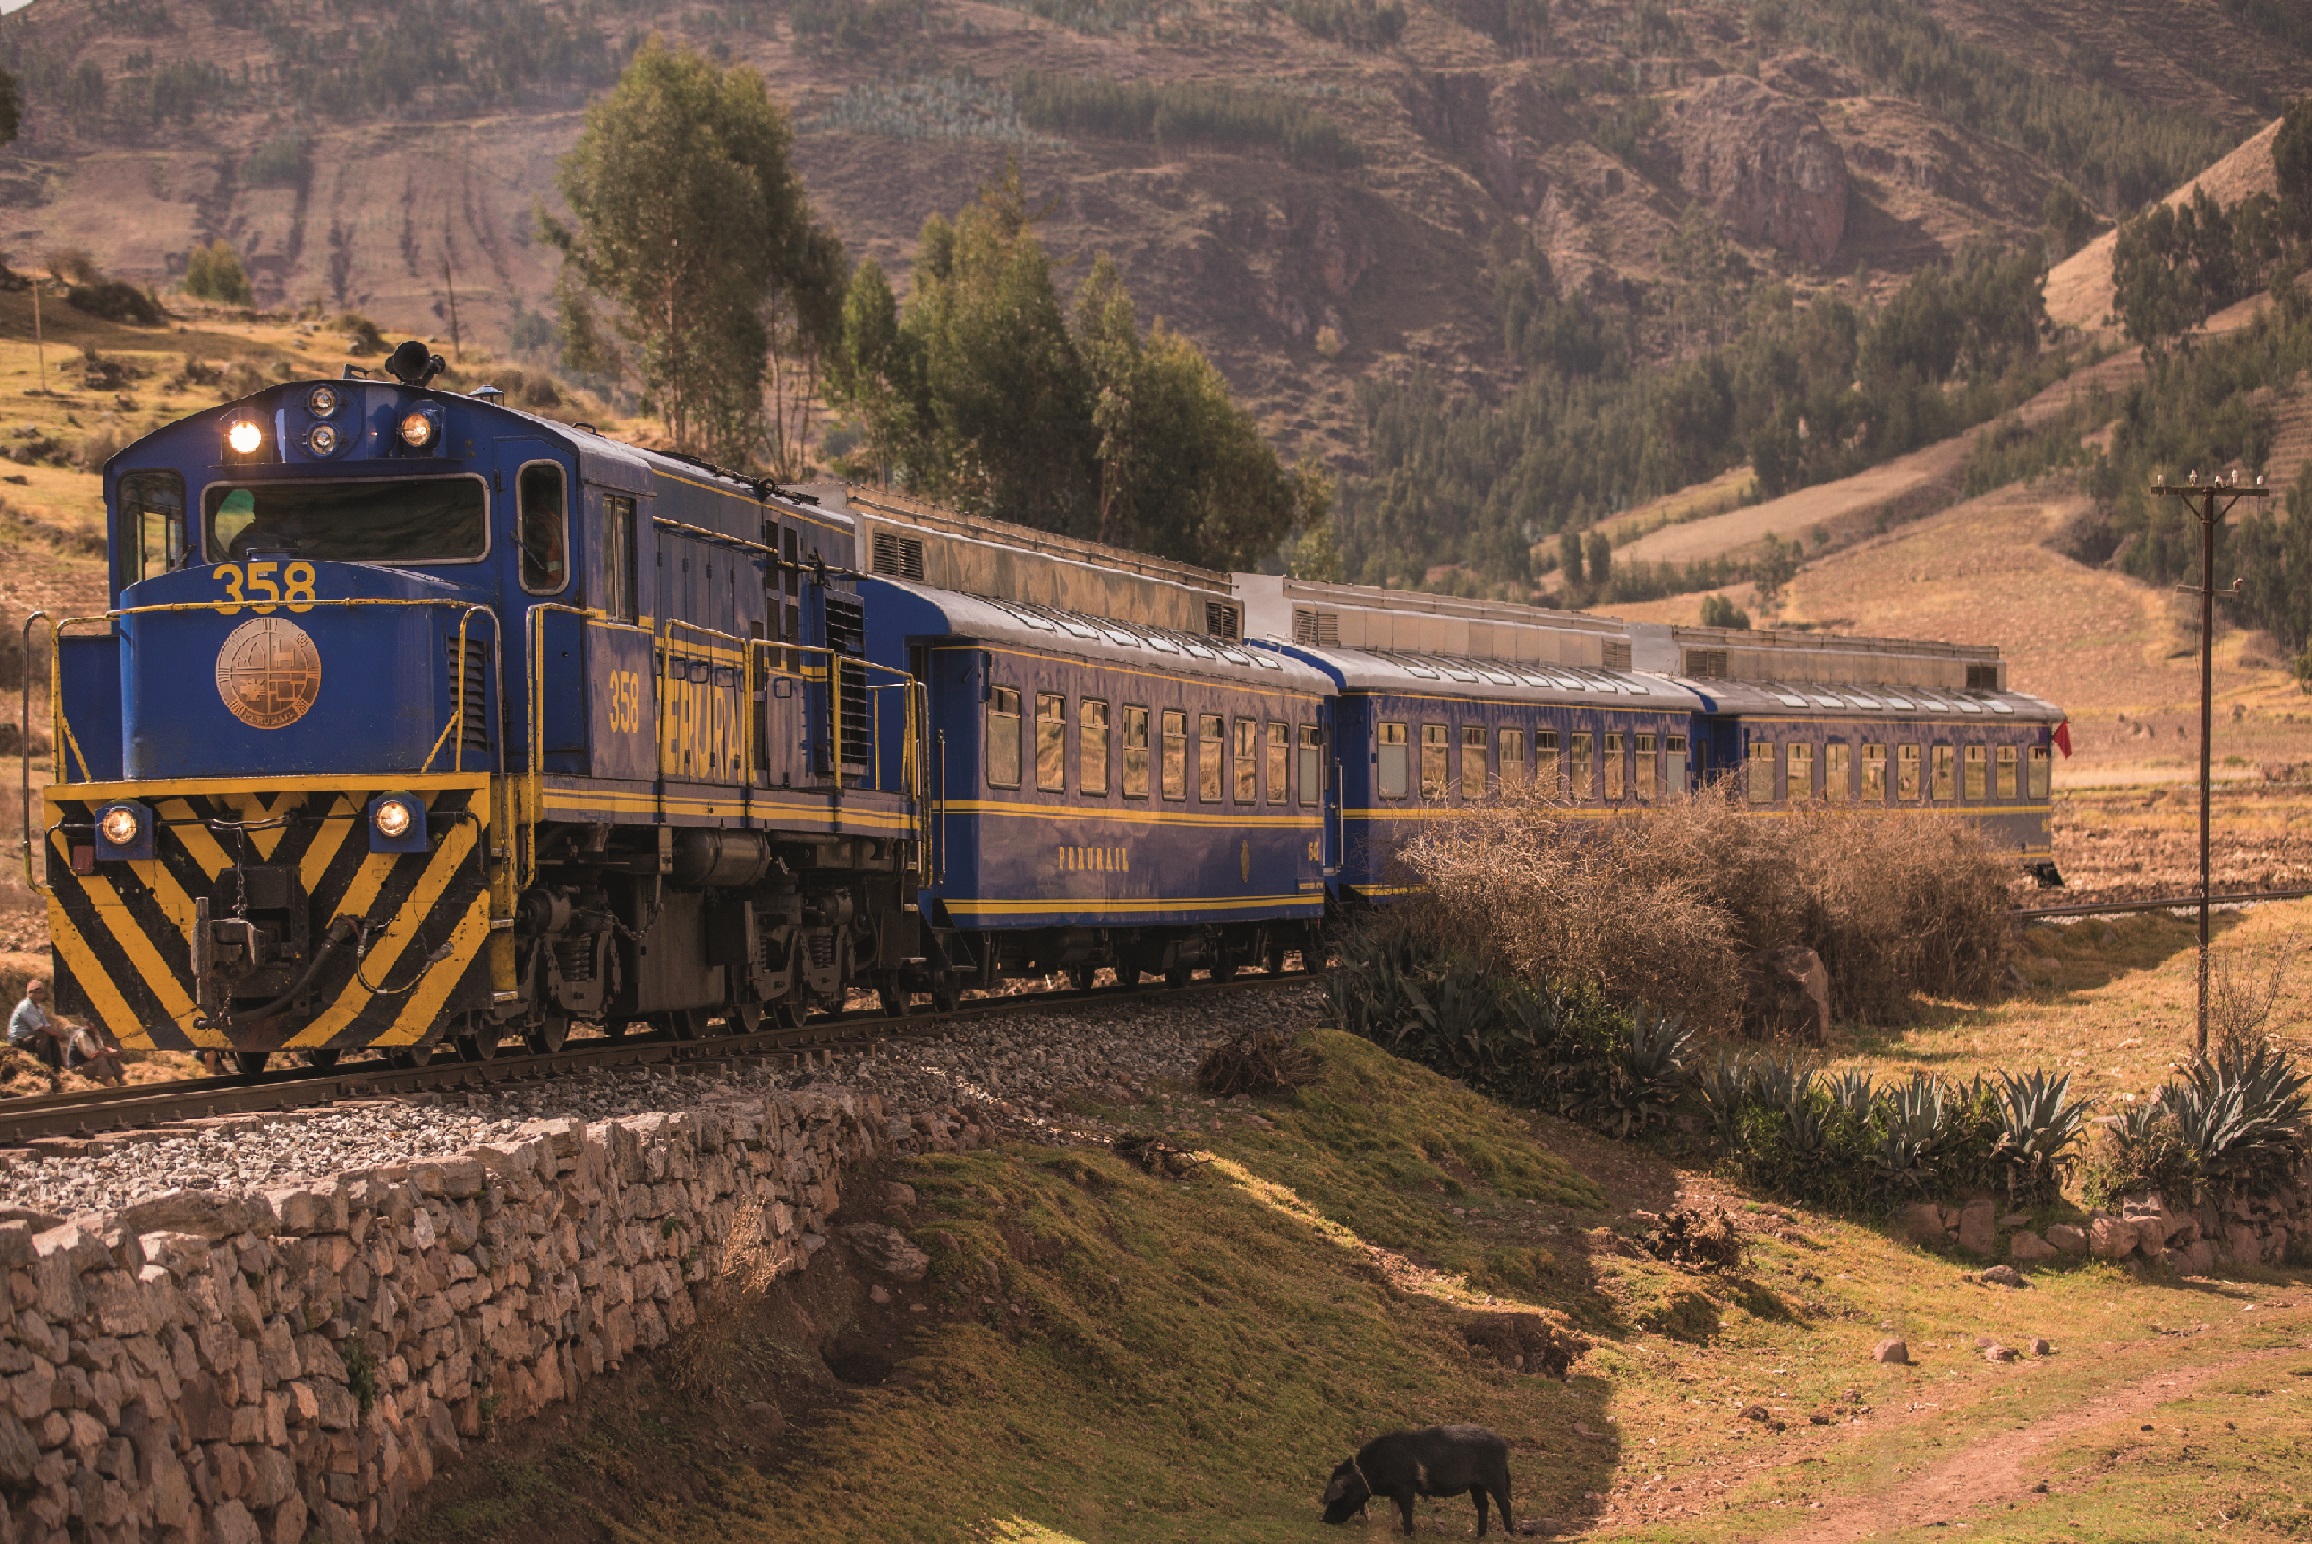 Viaja a Machu Picchu con tarifas desde S/ 15 en trenes turísticos